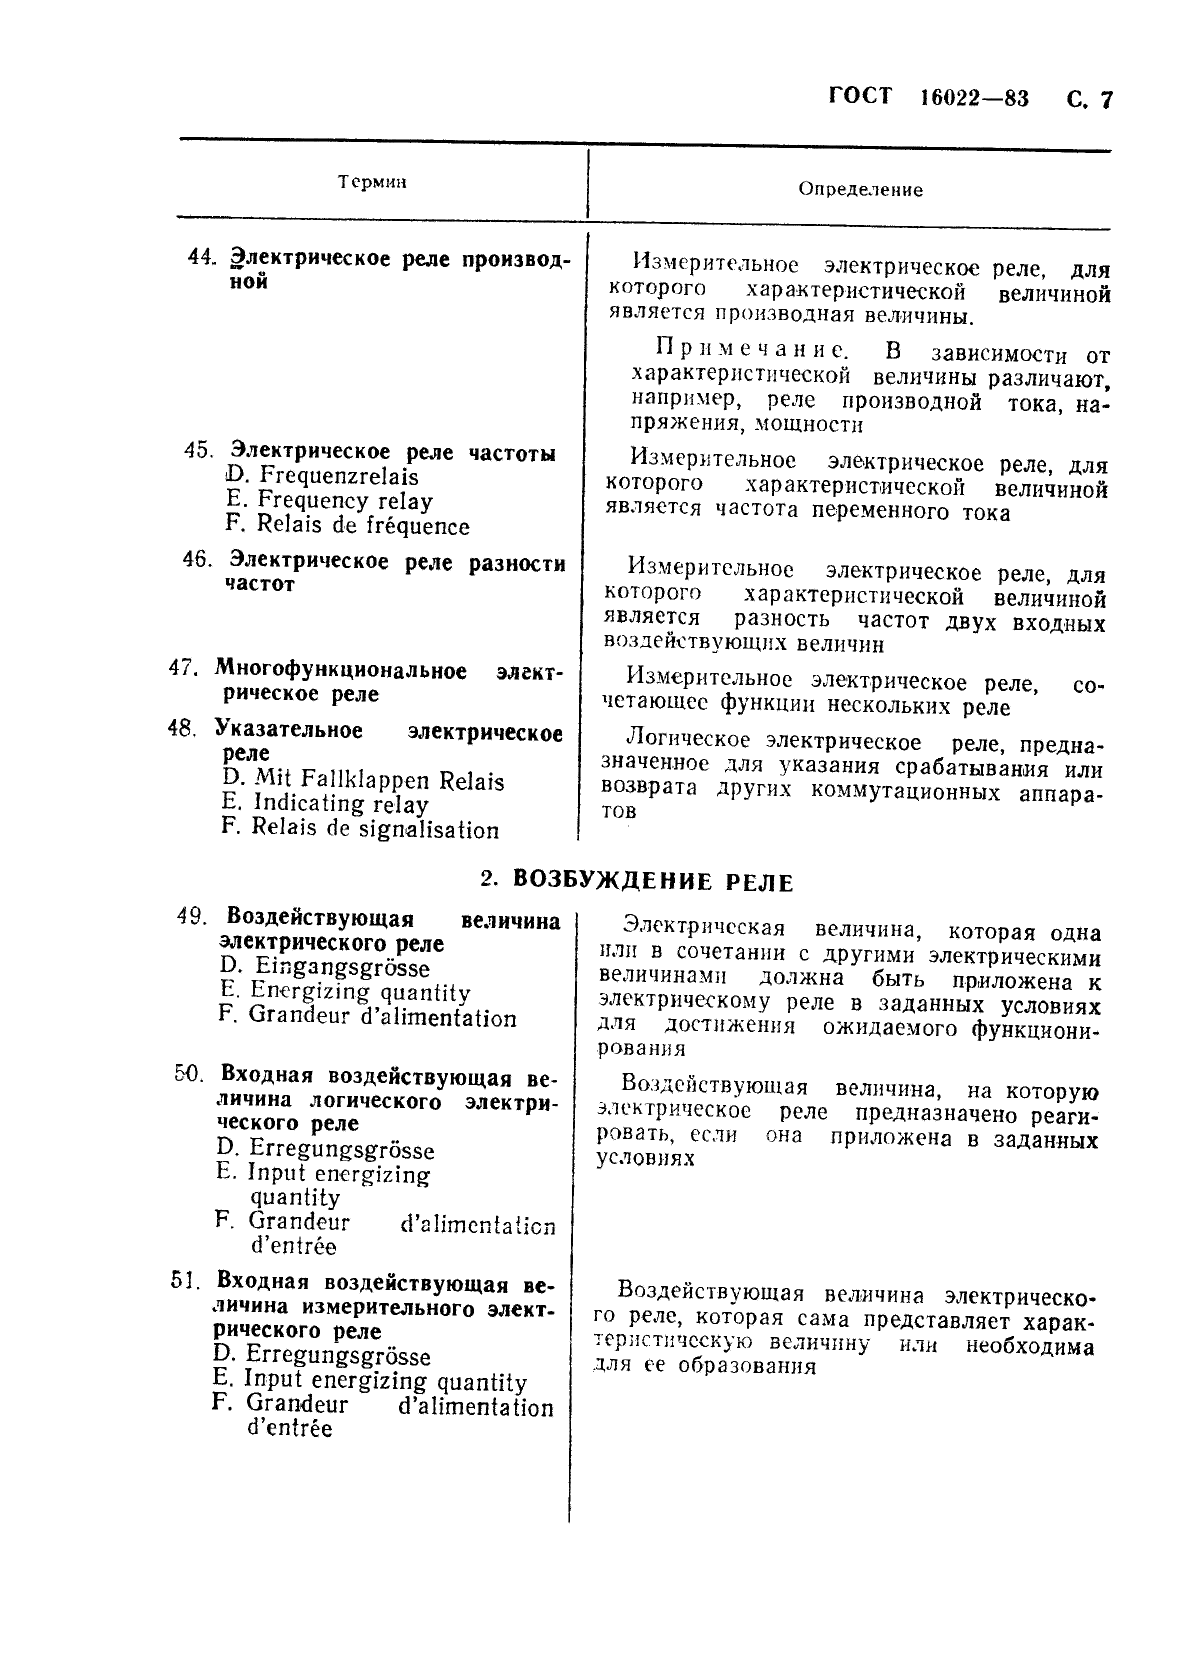 ГОСТ 16022-83 Реле электрические. Термины и определения (фото 8 из 37)